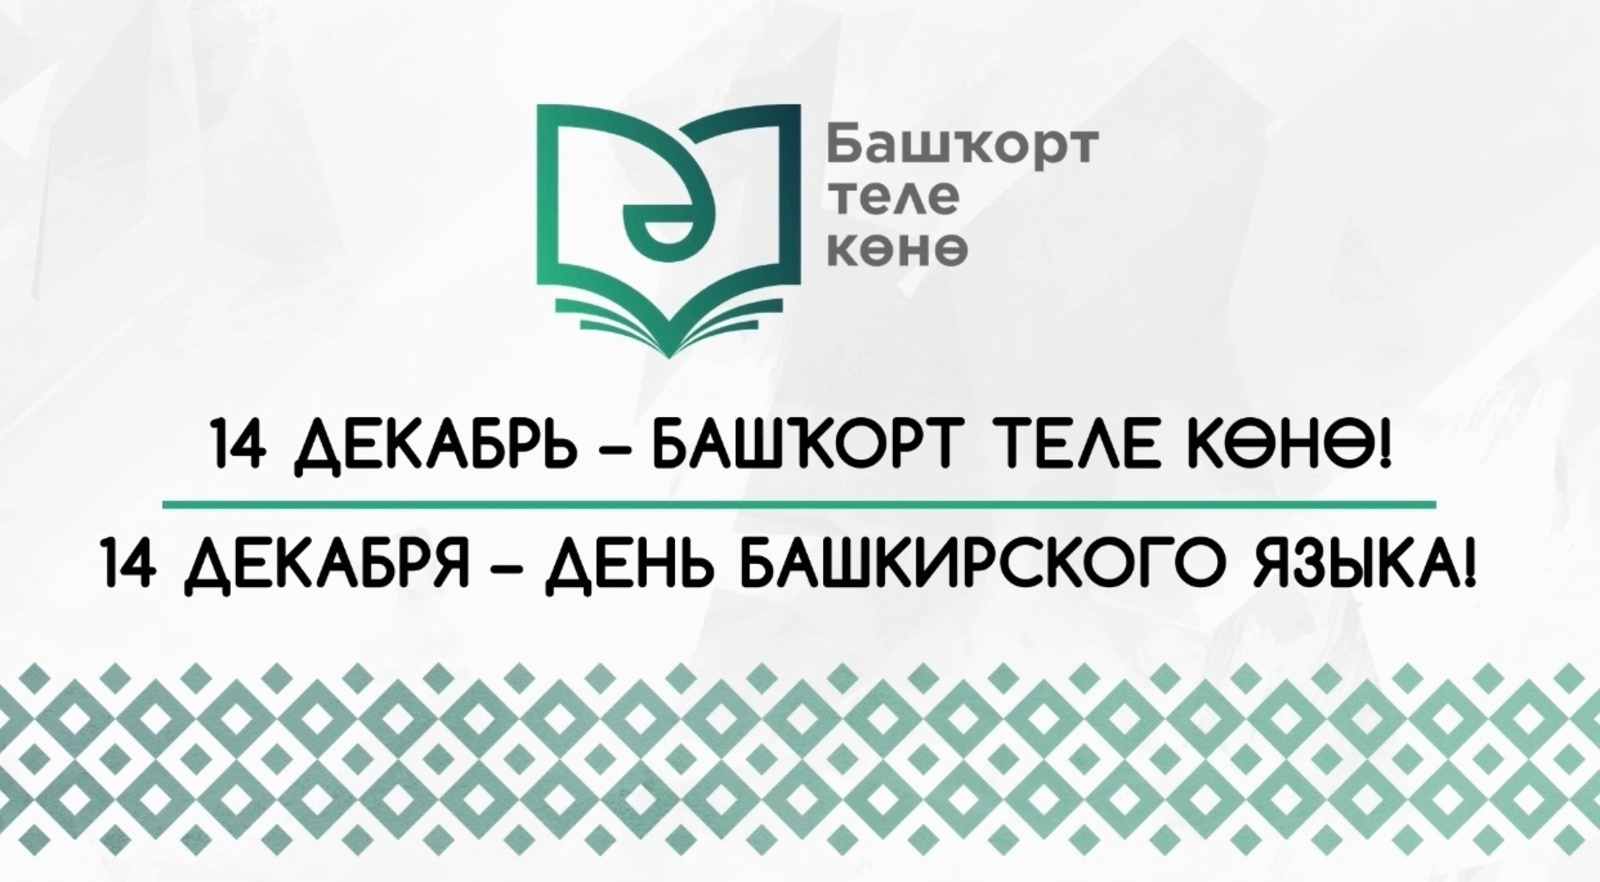 Присоединяемся к флешмобу, посвященному Дню башкирского языка